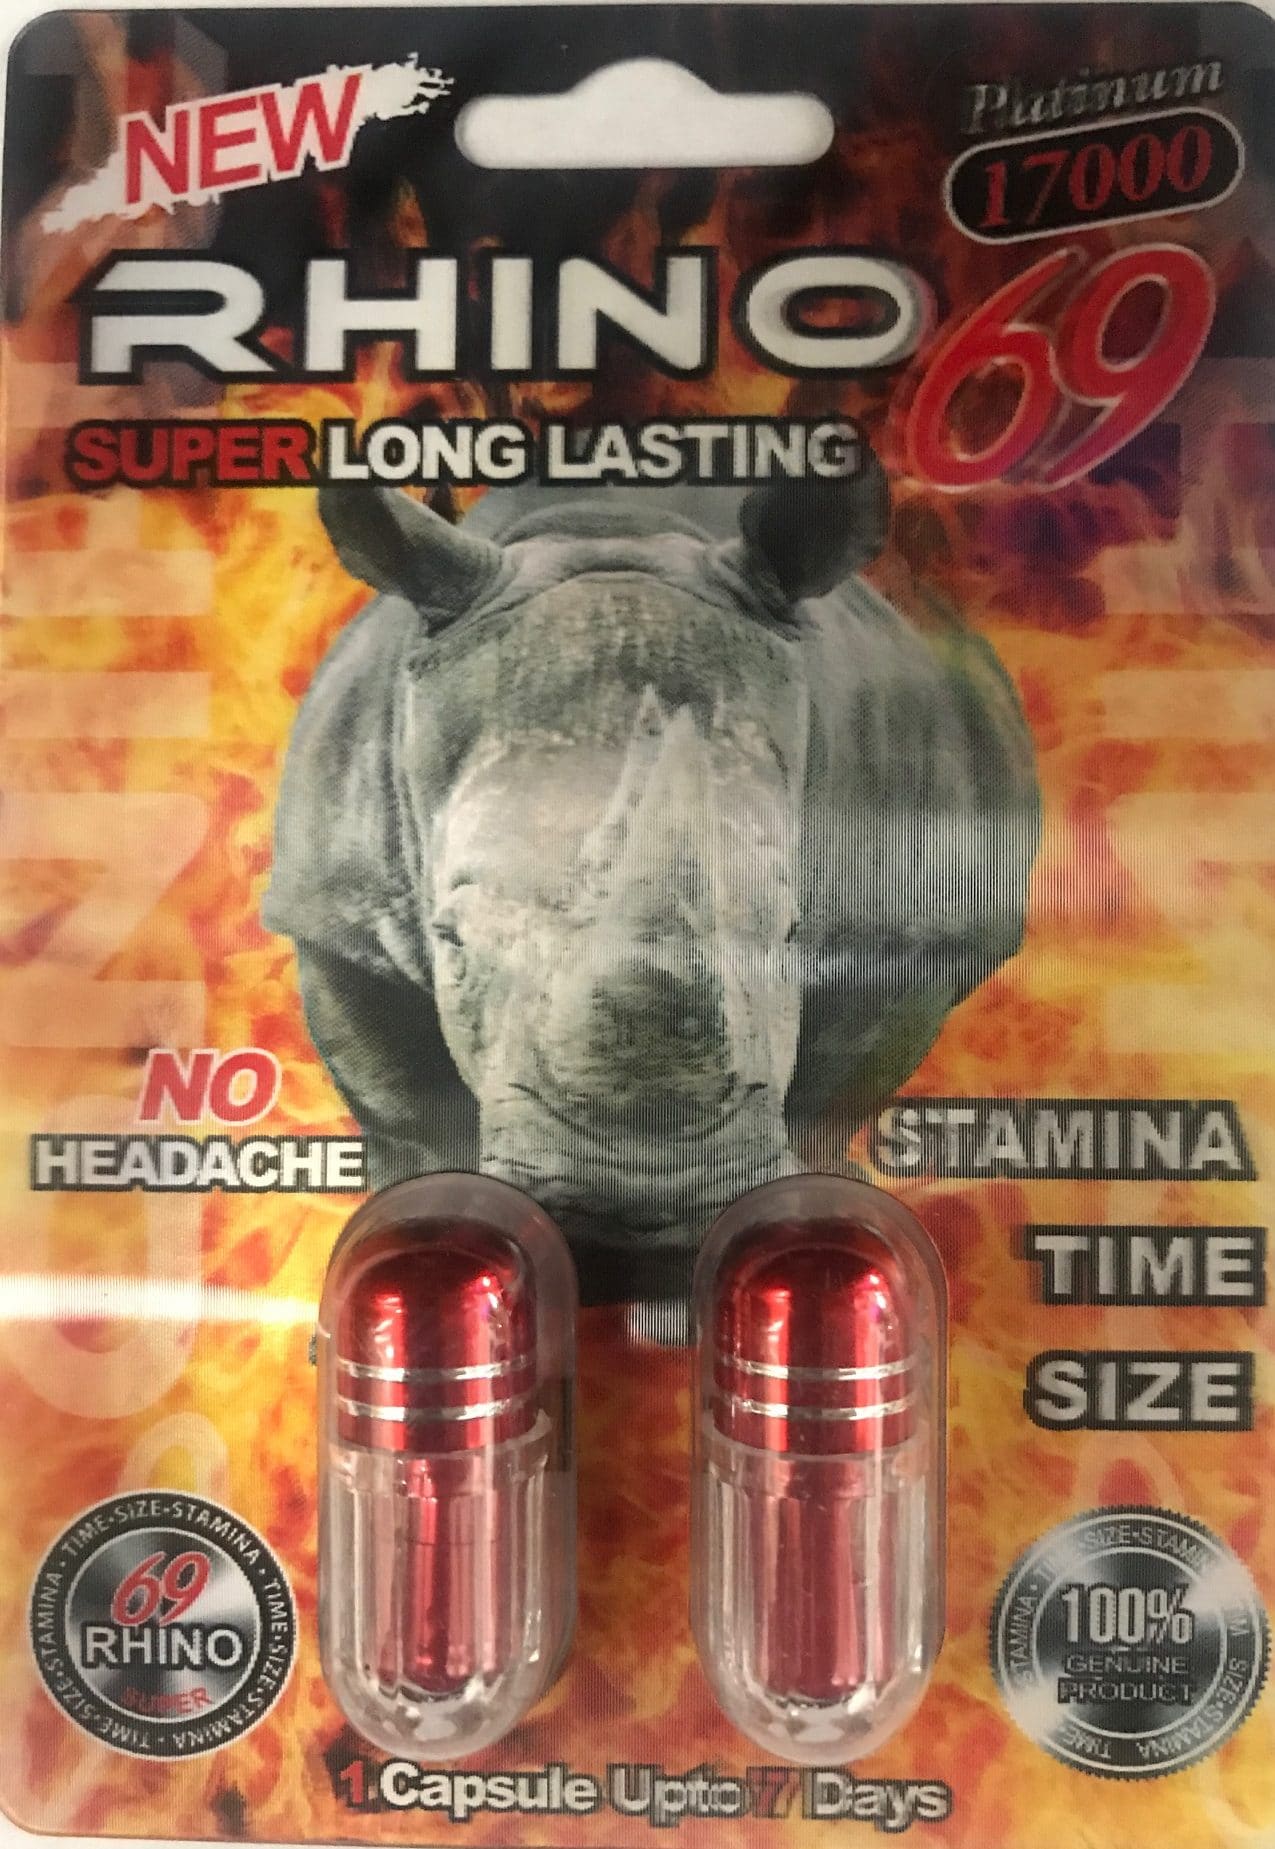 how to take rhino 7 pill